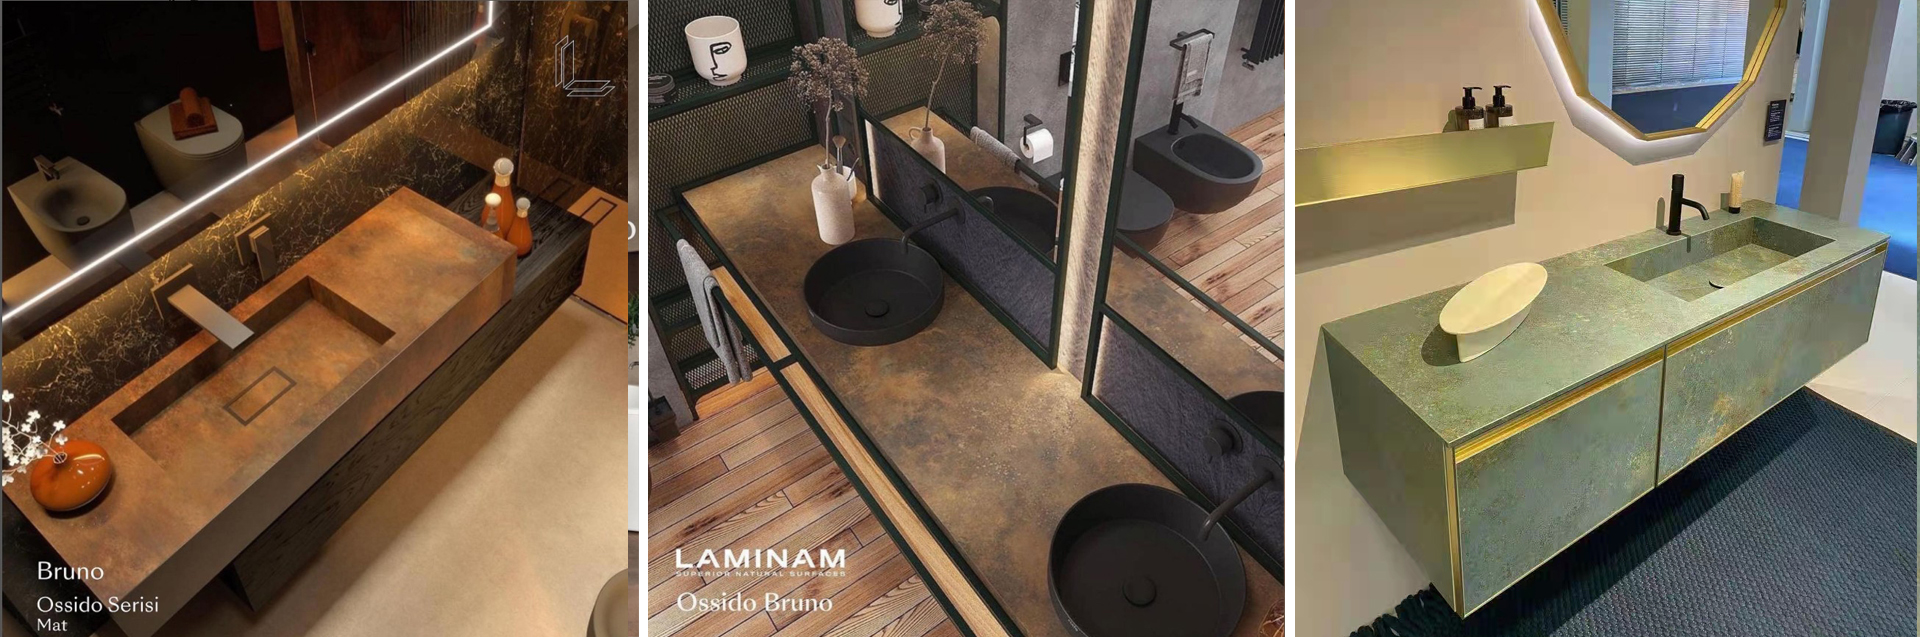 laminam岩板浴室柜台面应用